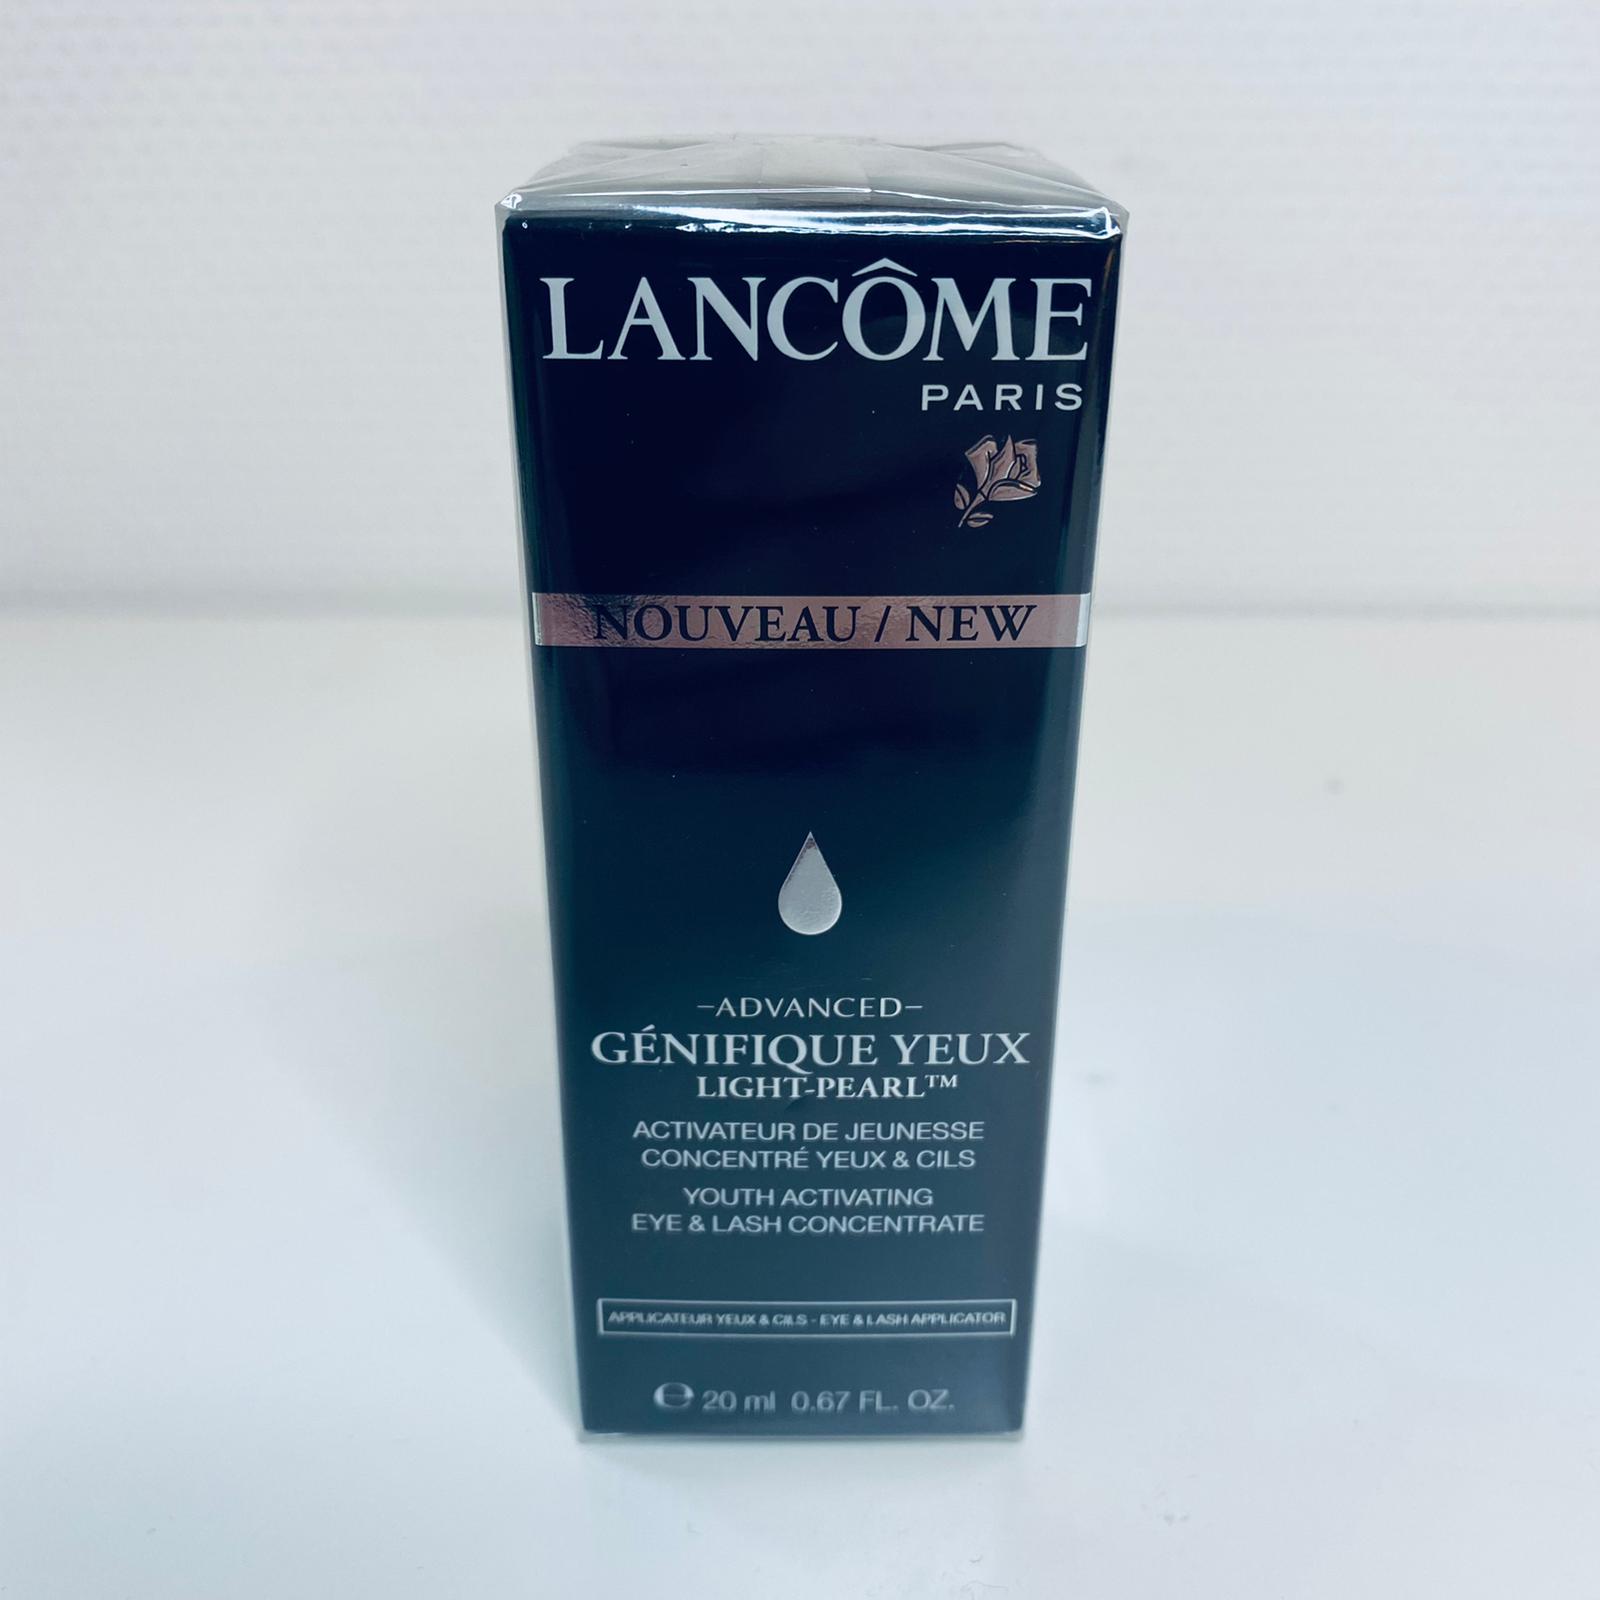 Lancome Genifique Yeux eye & lash concentrate 20 ml